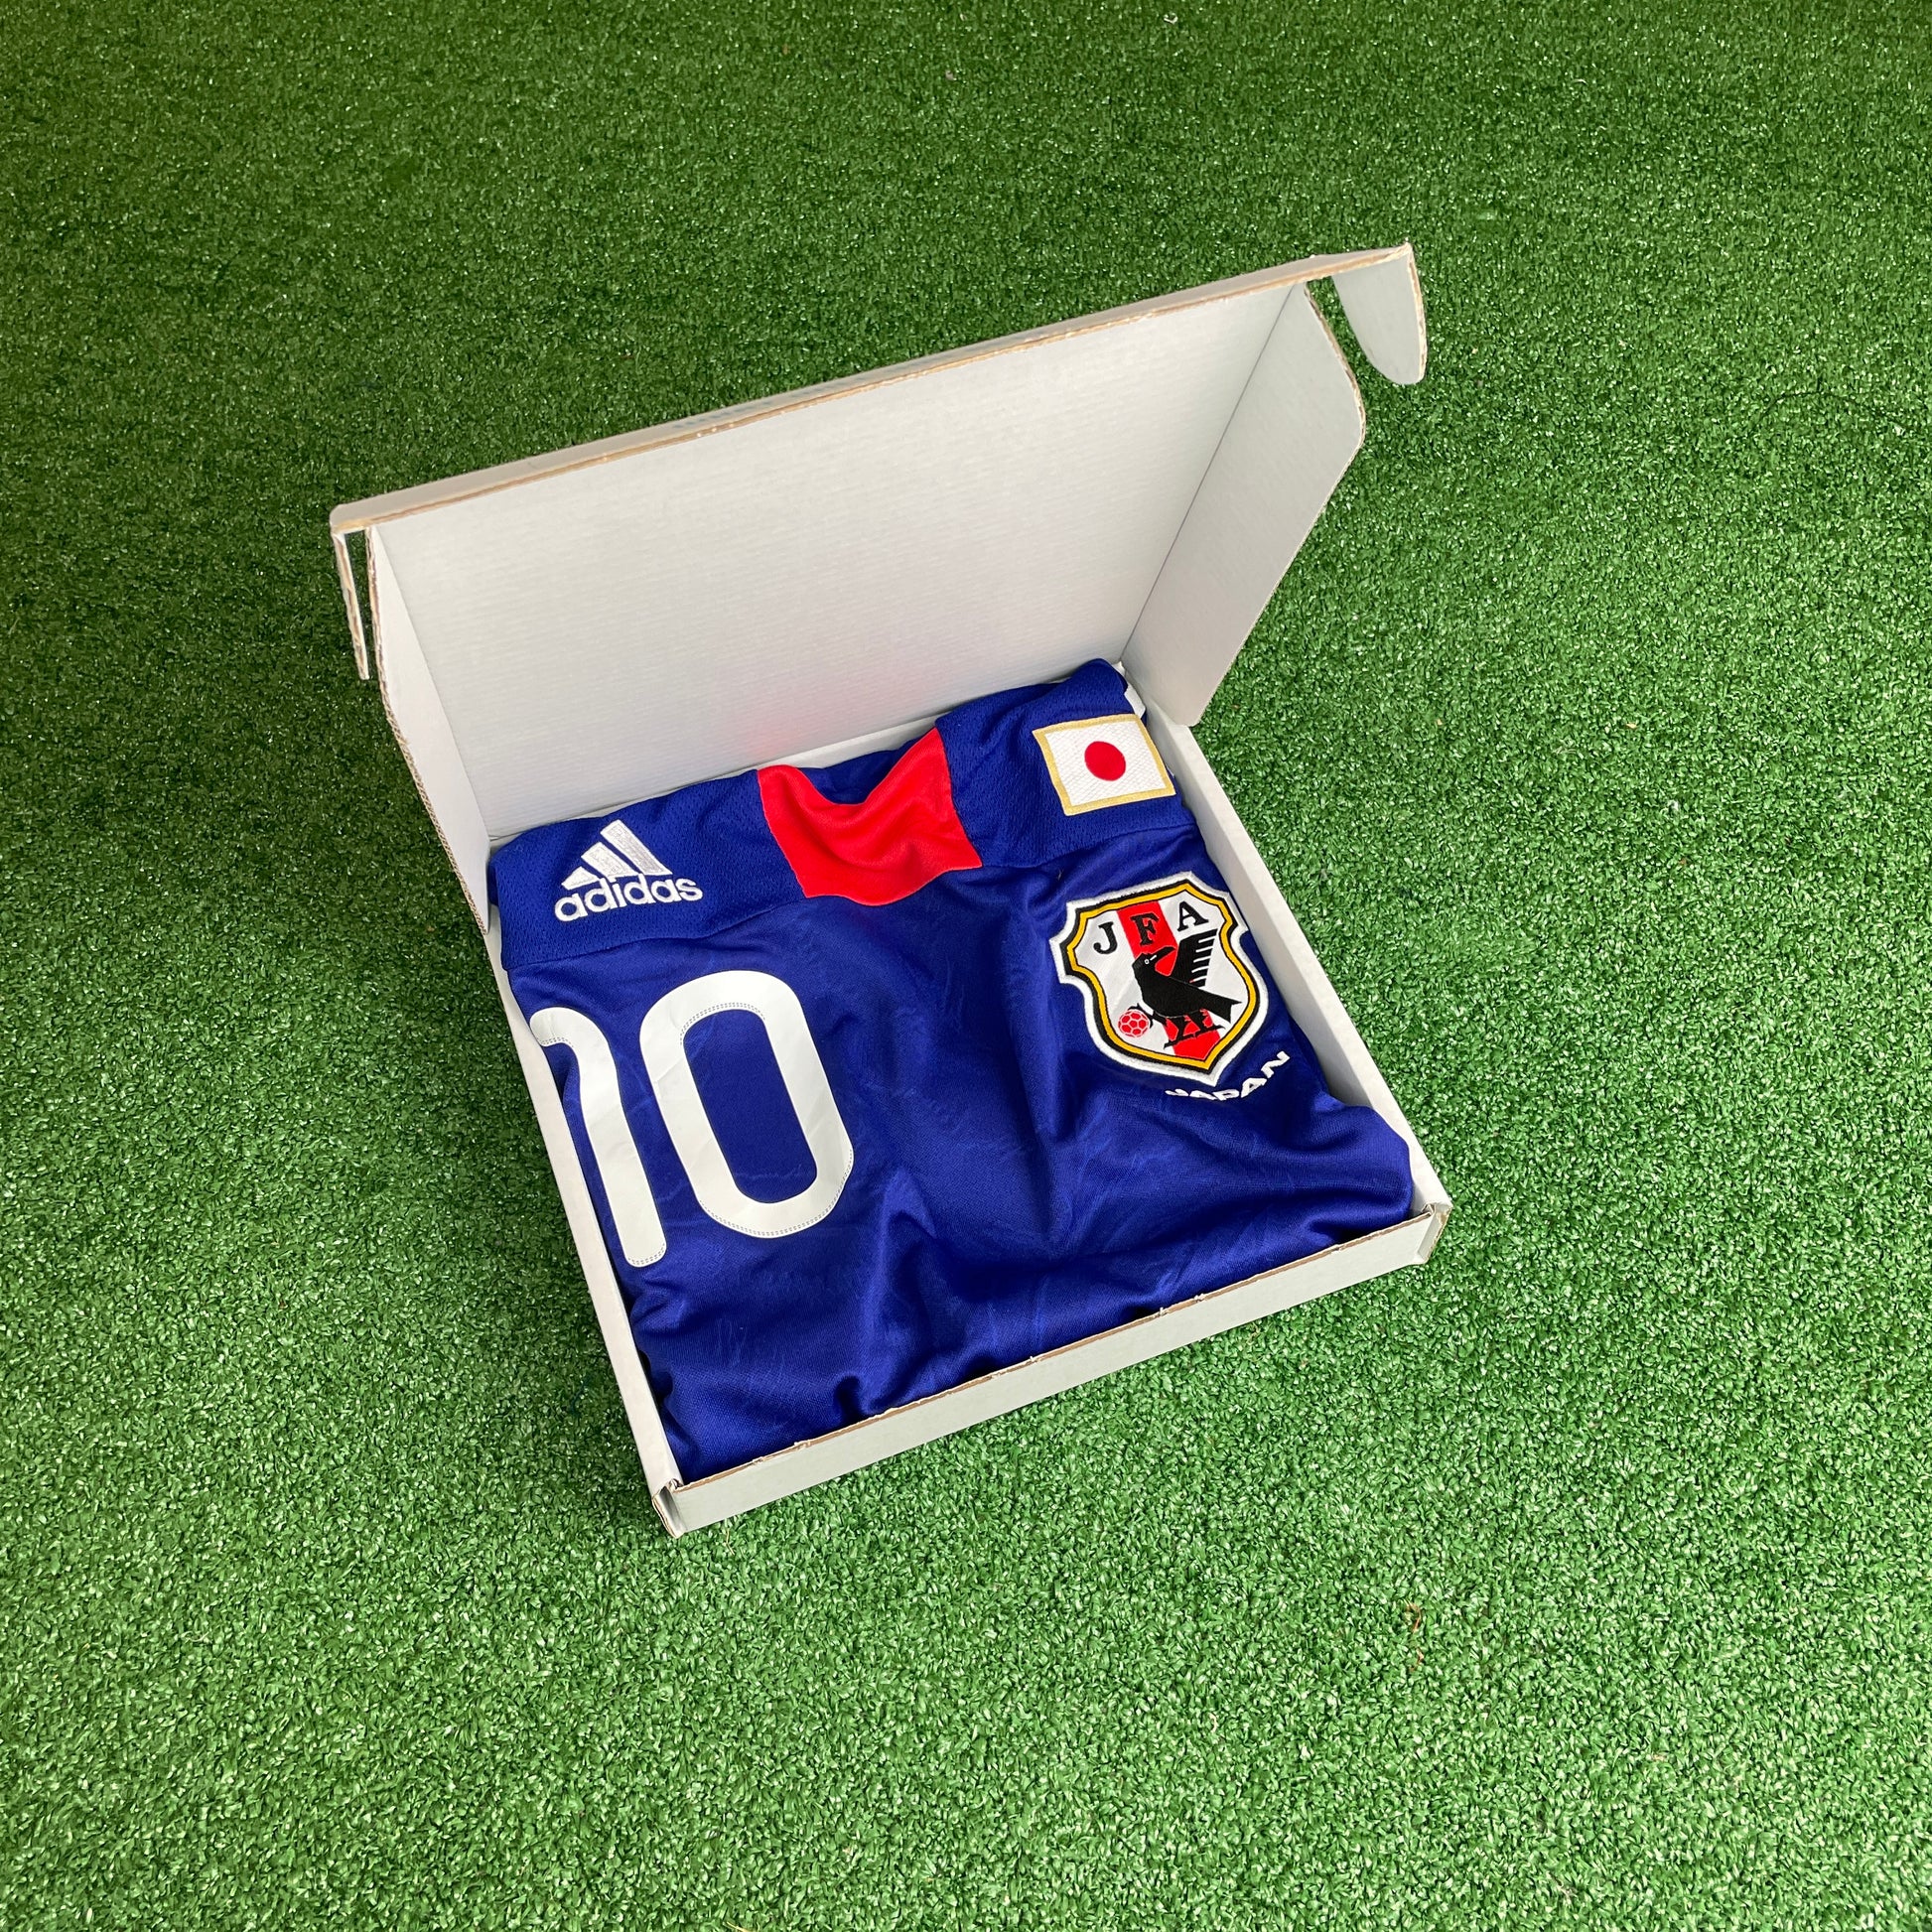 Japan Kagawa shirt in a box